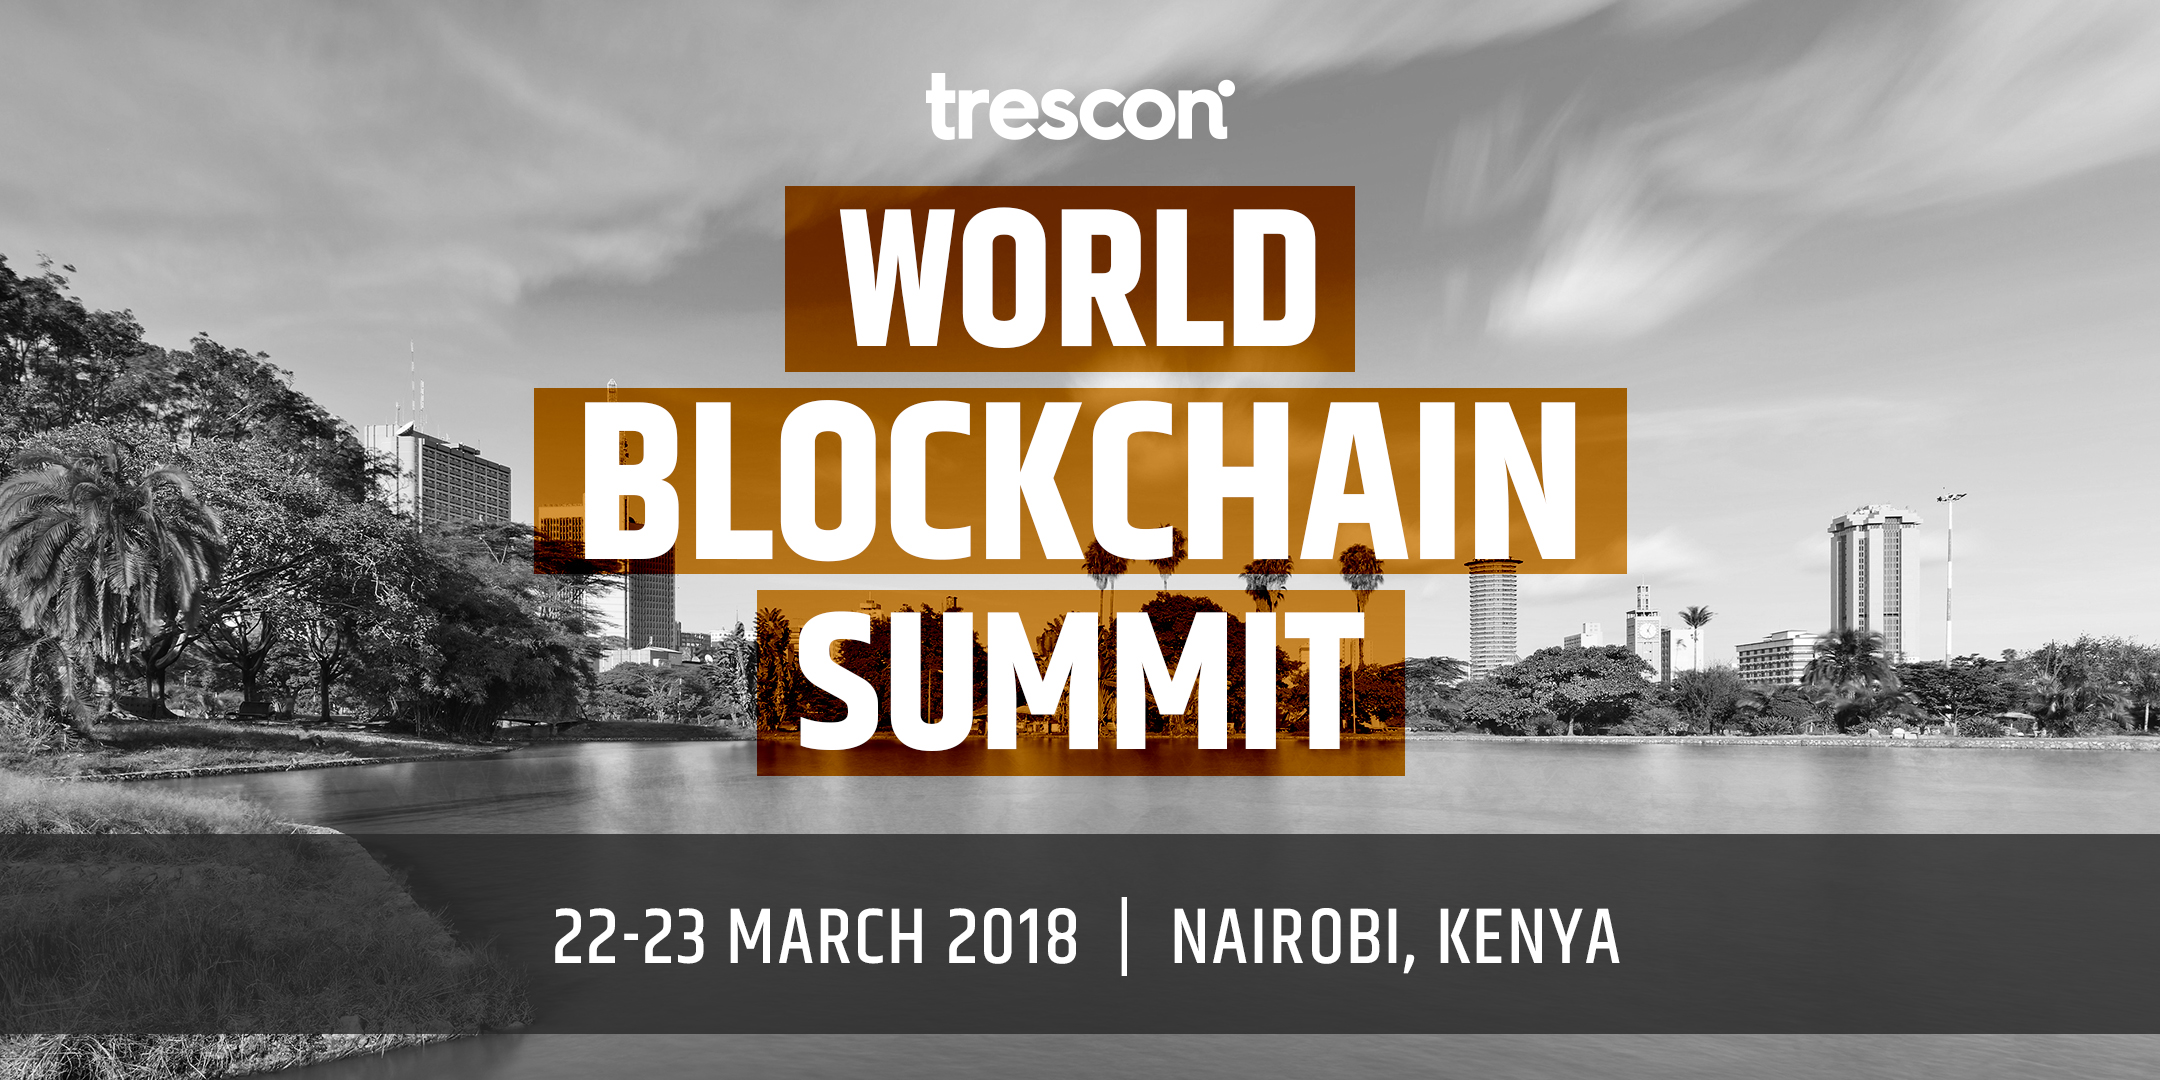 World Blockchain Summit Series